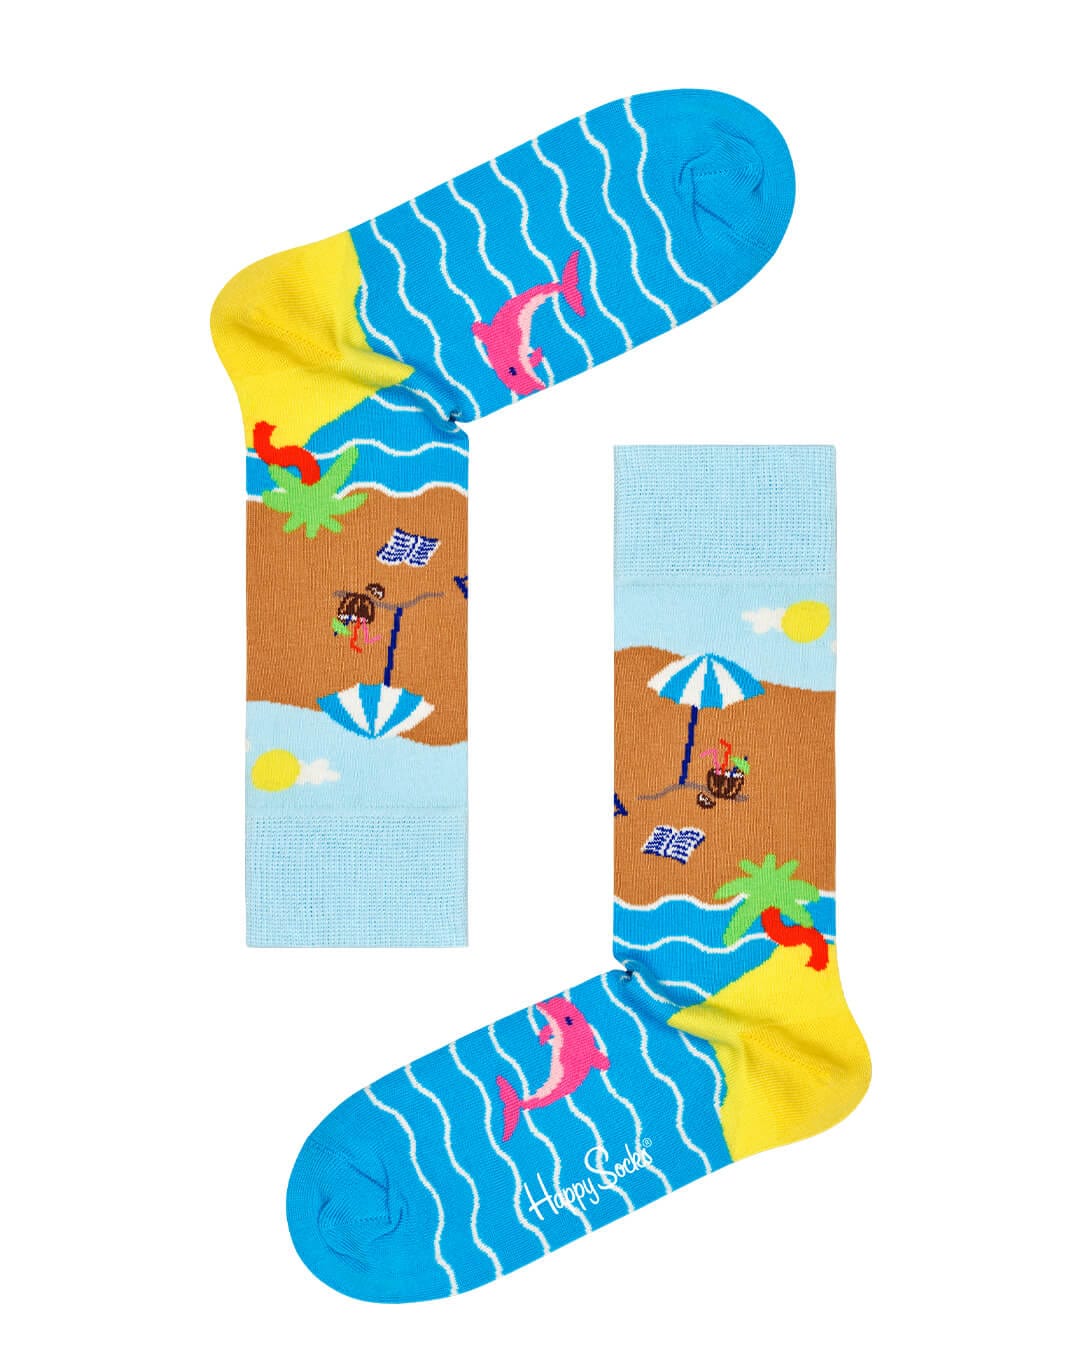 Happy Socks Socks Happy Socks 2-Pack Wish You Were Here Socks Gift Set